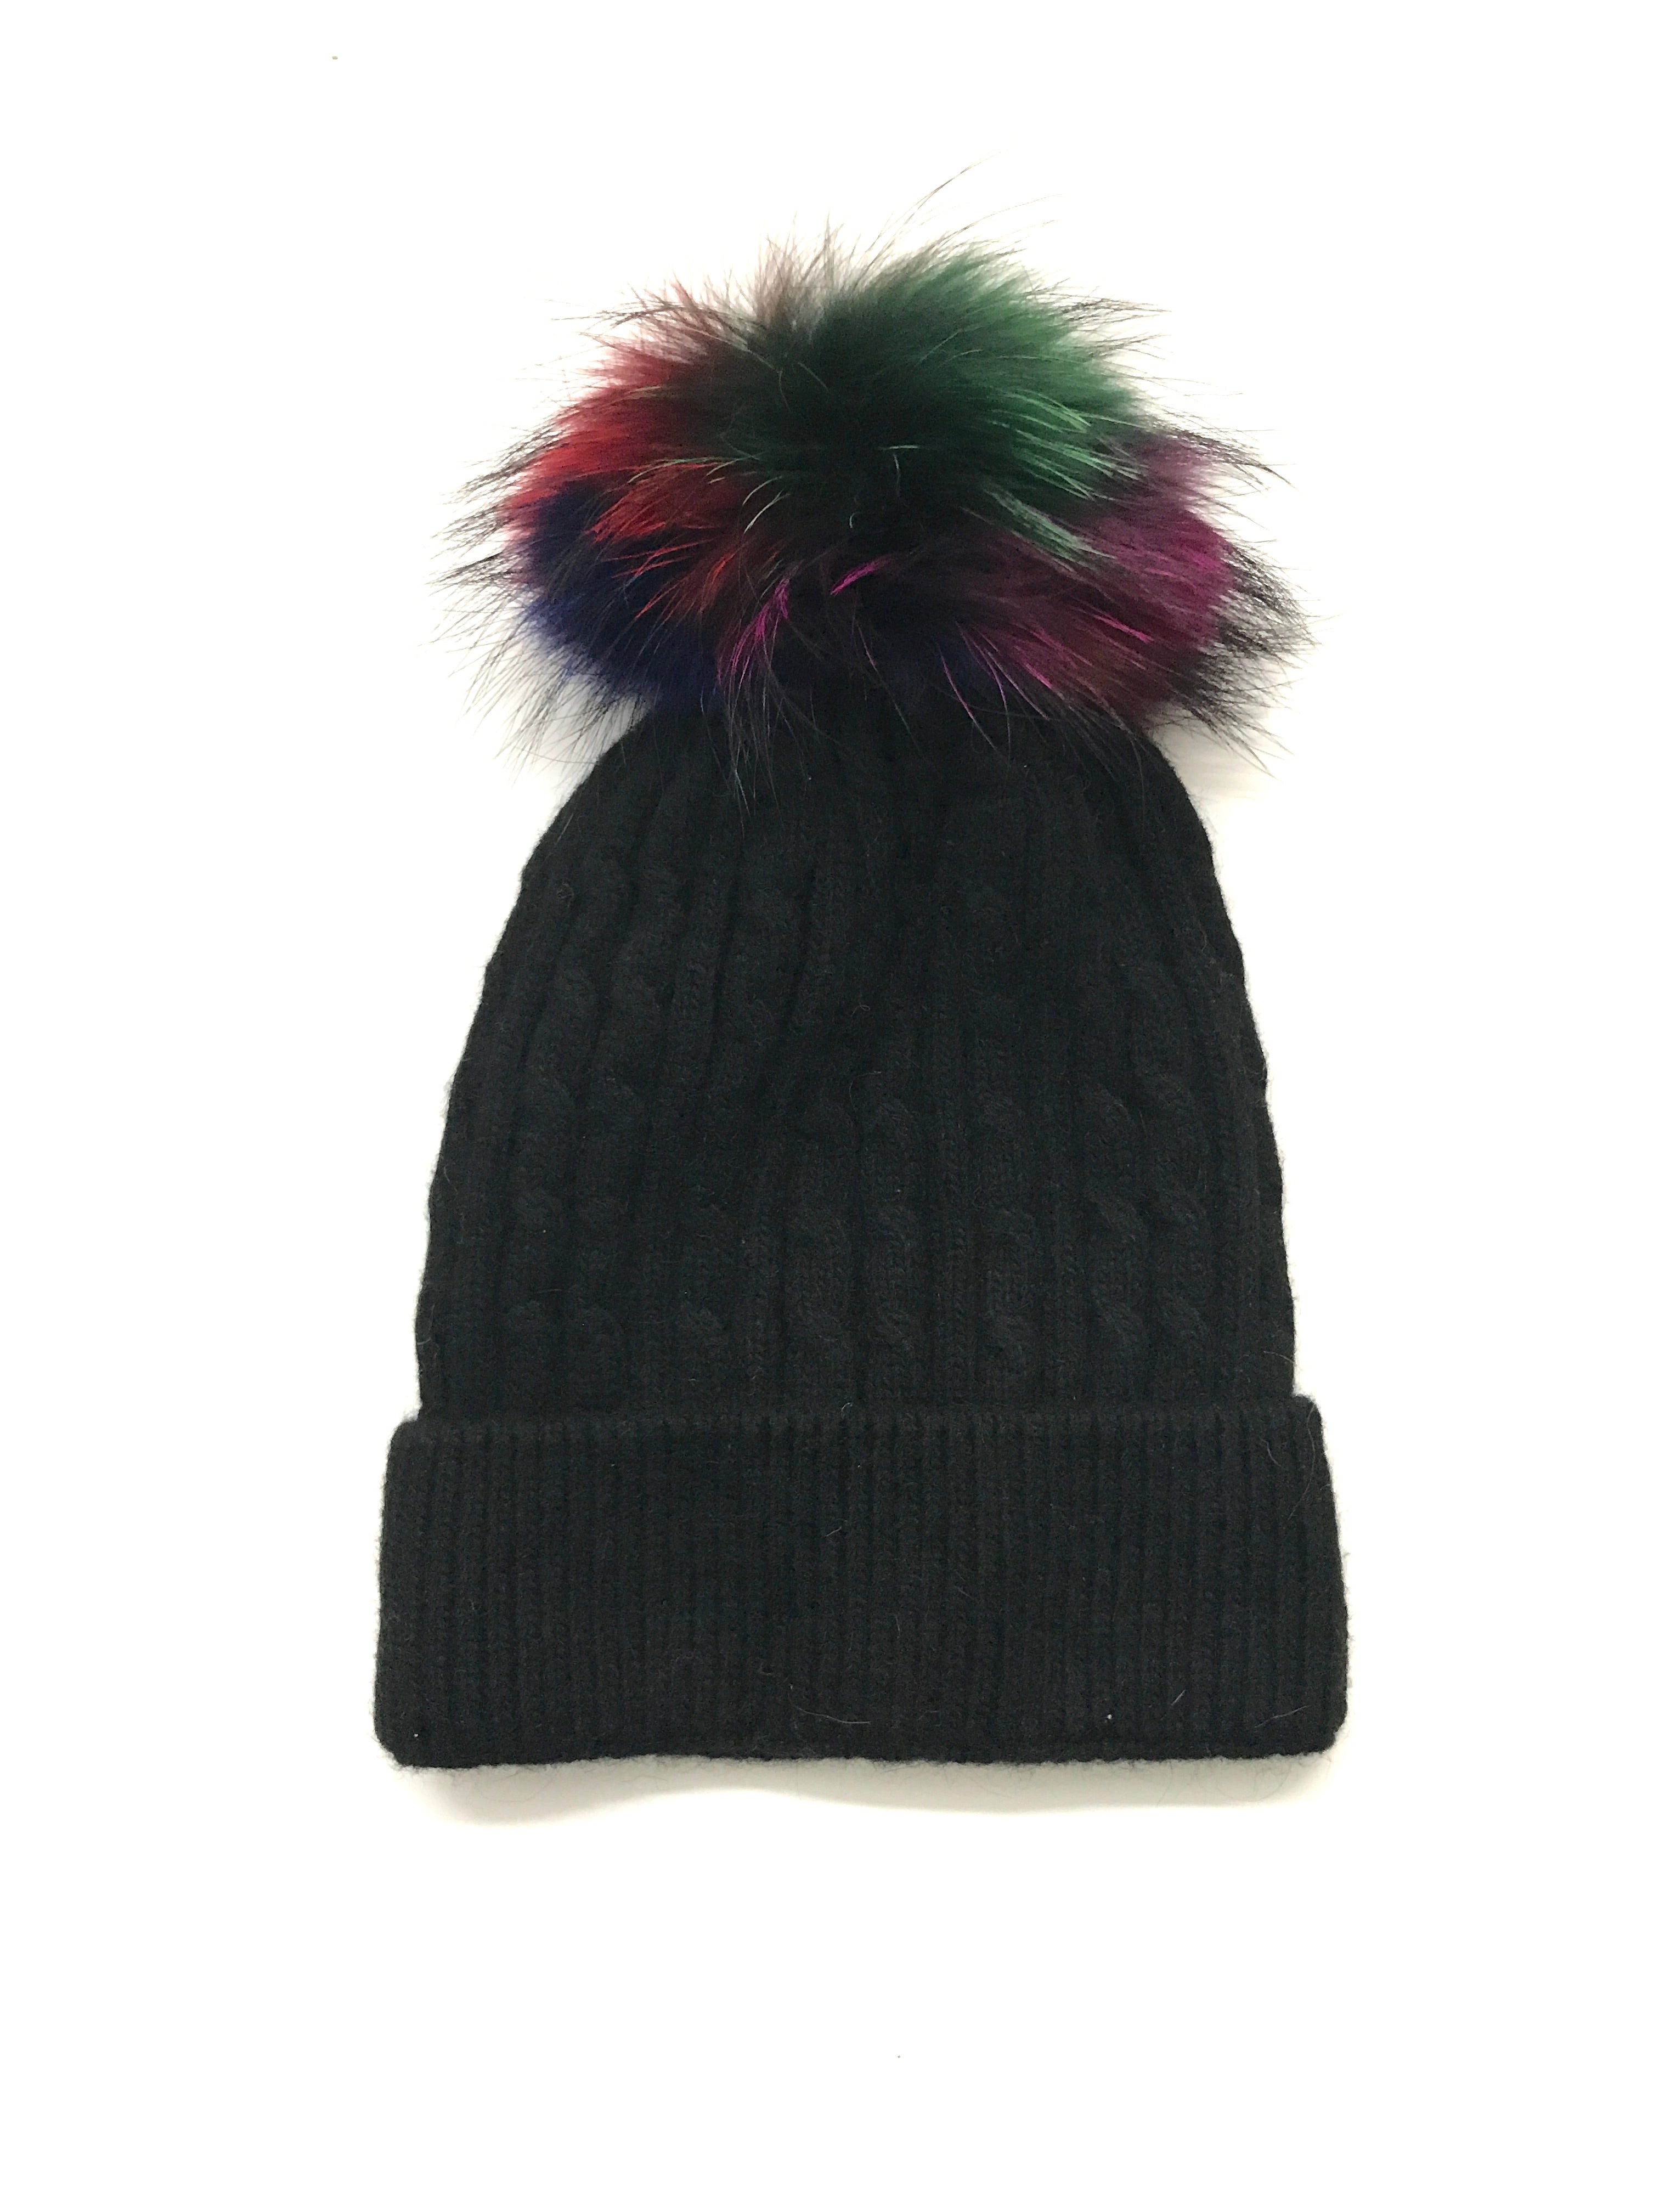 SPECIAL - Aspen Cable Knit Pom Pom Hat Black/Autumn - FINAL SALE